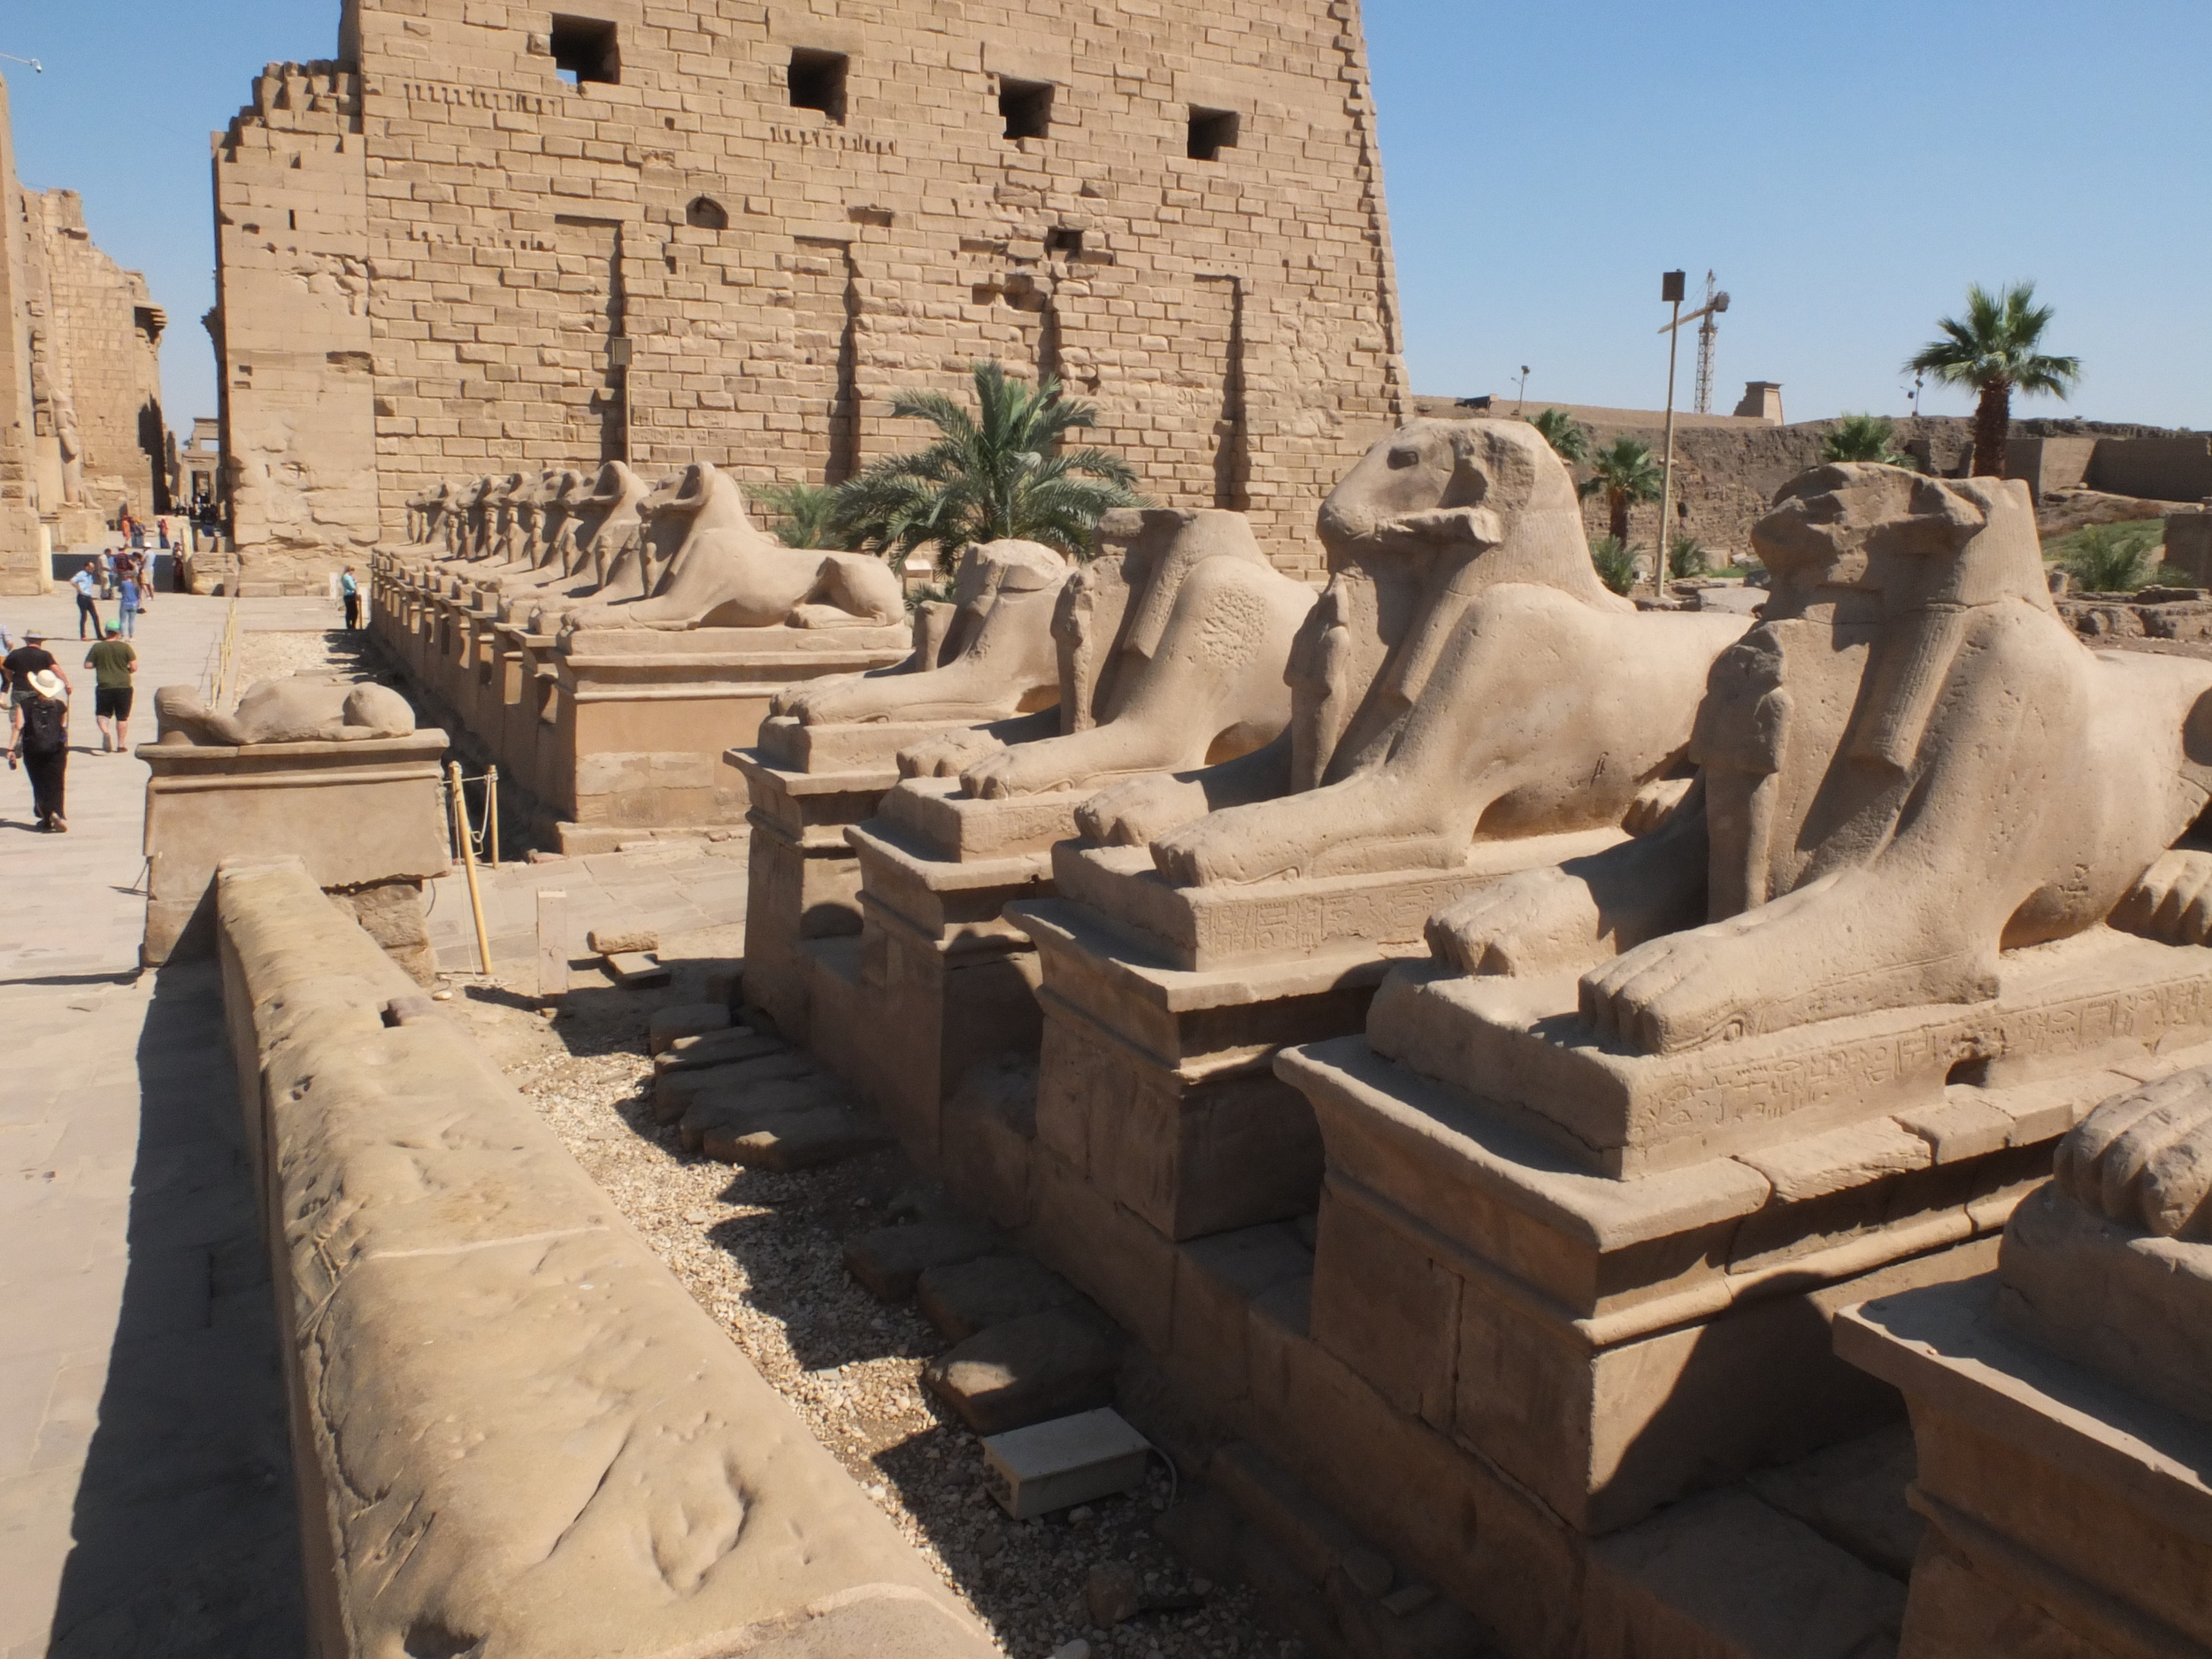  At Karnak 